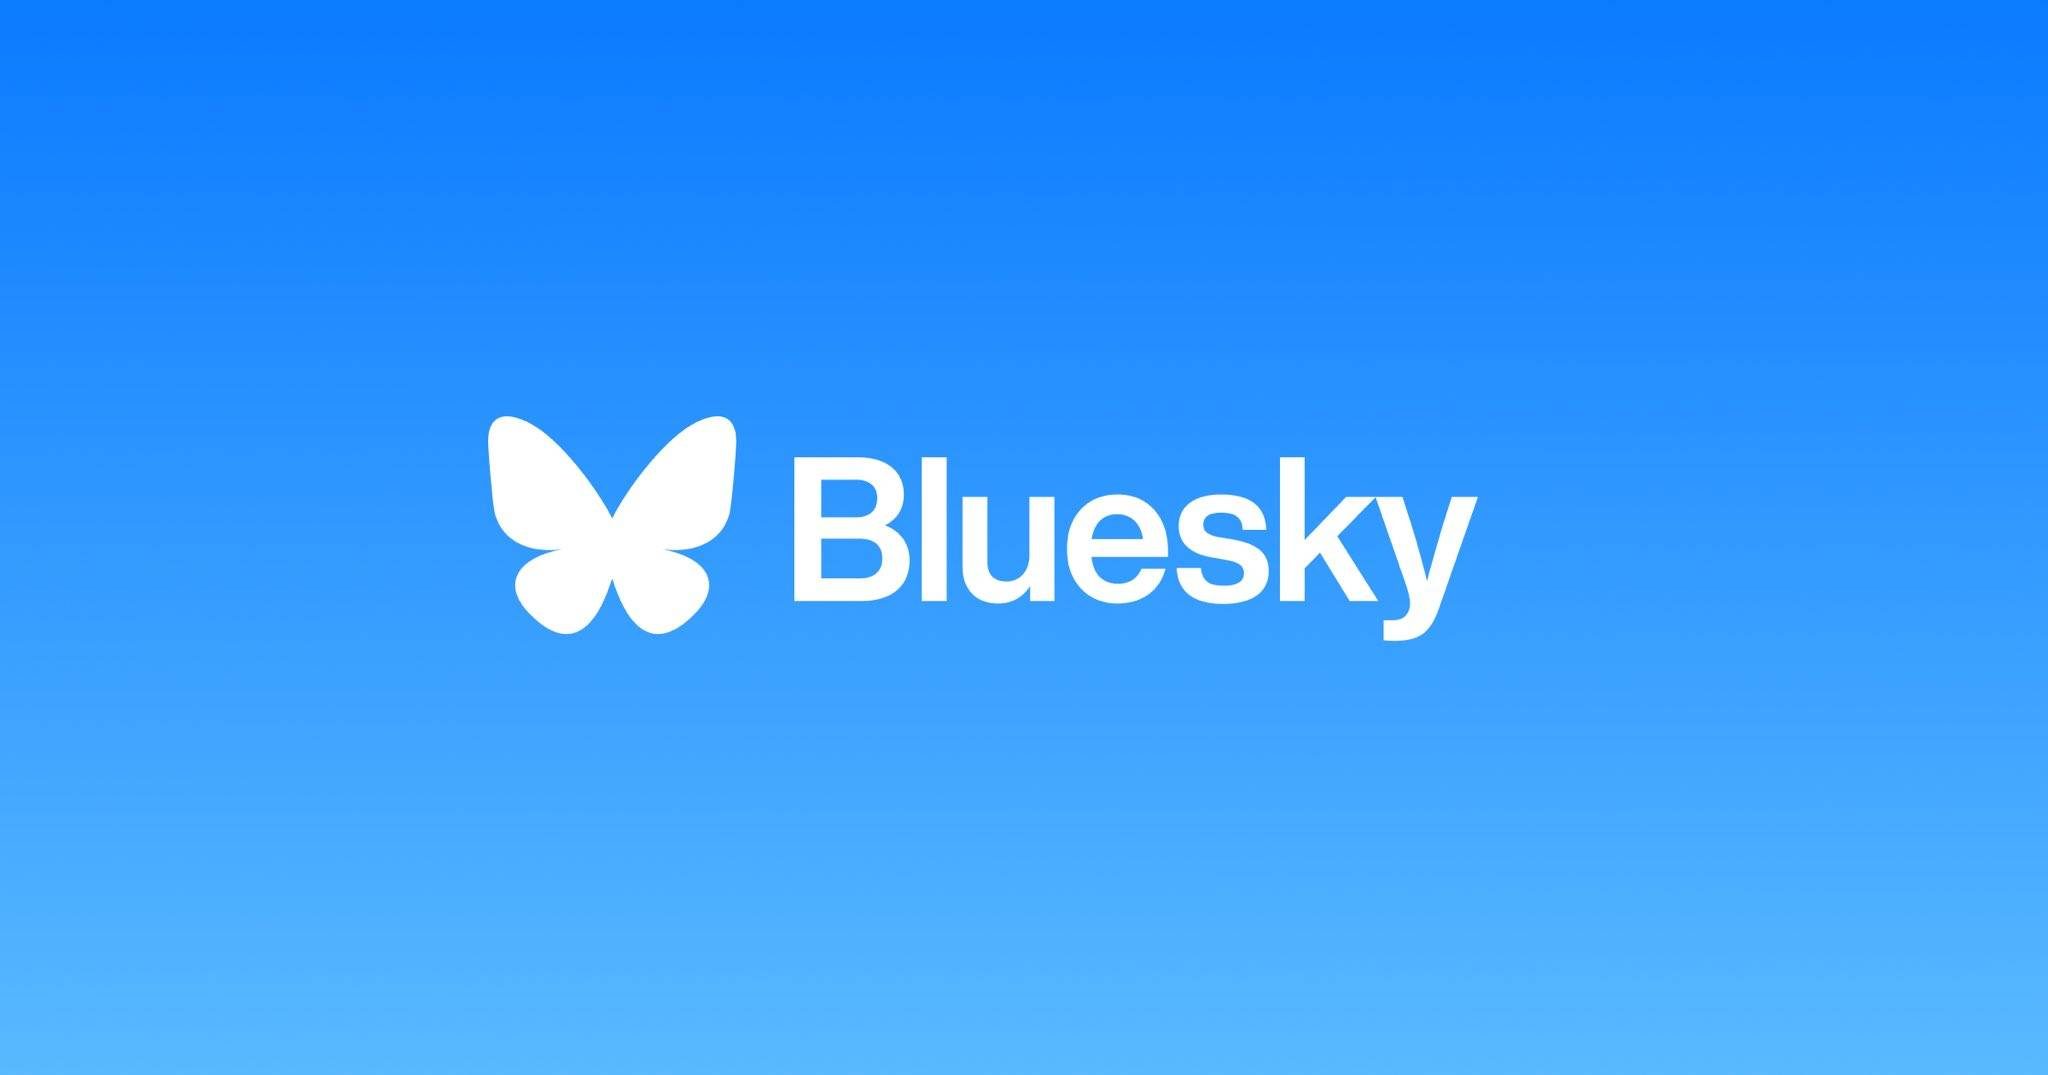 Bluesky, mạng xã hội phi tập trung, chính thức hoạt động